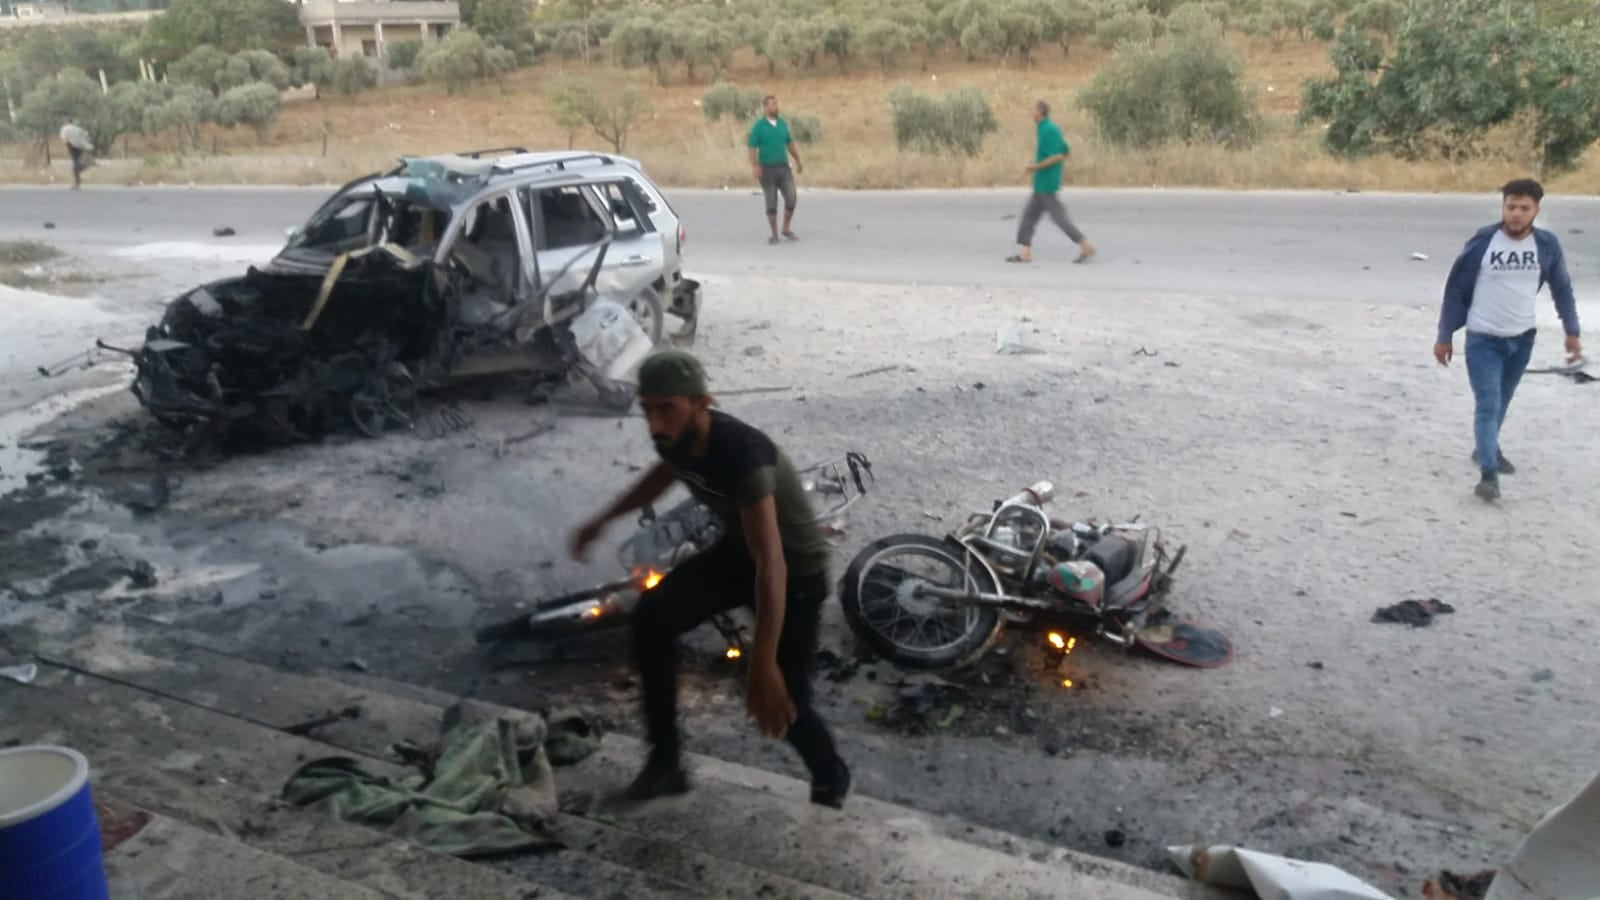 ارتقى مدني وأصيب آخرون جراء استهداف قوات الأسد سيارة مدنية على الطريق الواصل بين منطقتي بداما والزعينية غربي إدلب مساء أمس الثلاثاء.